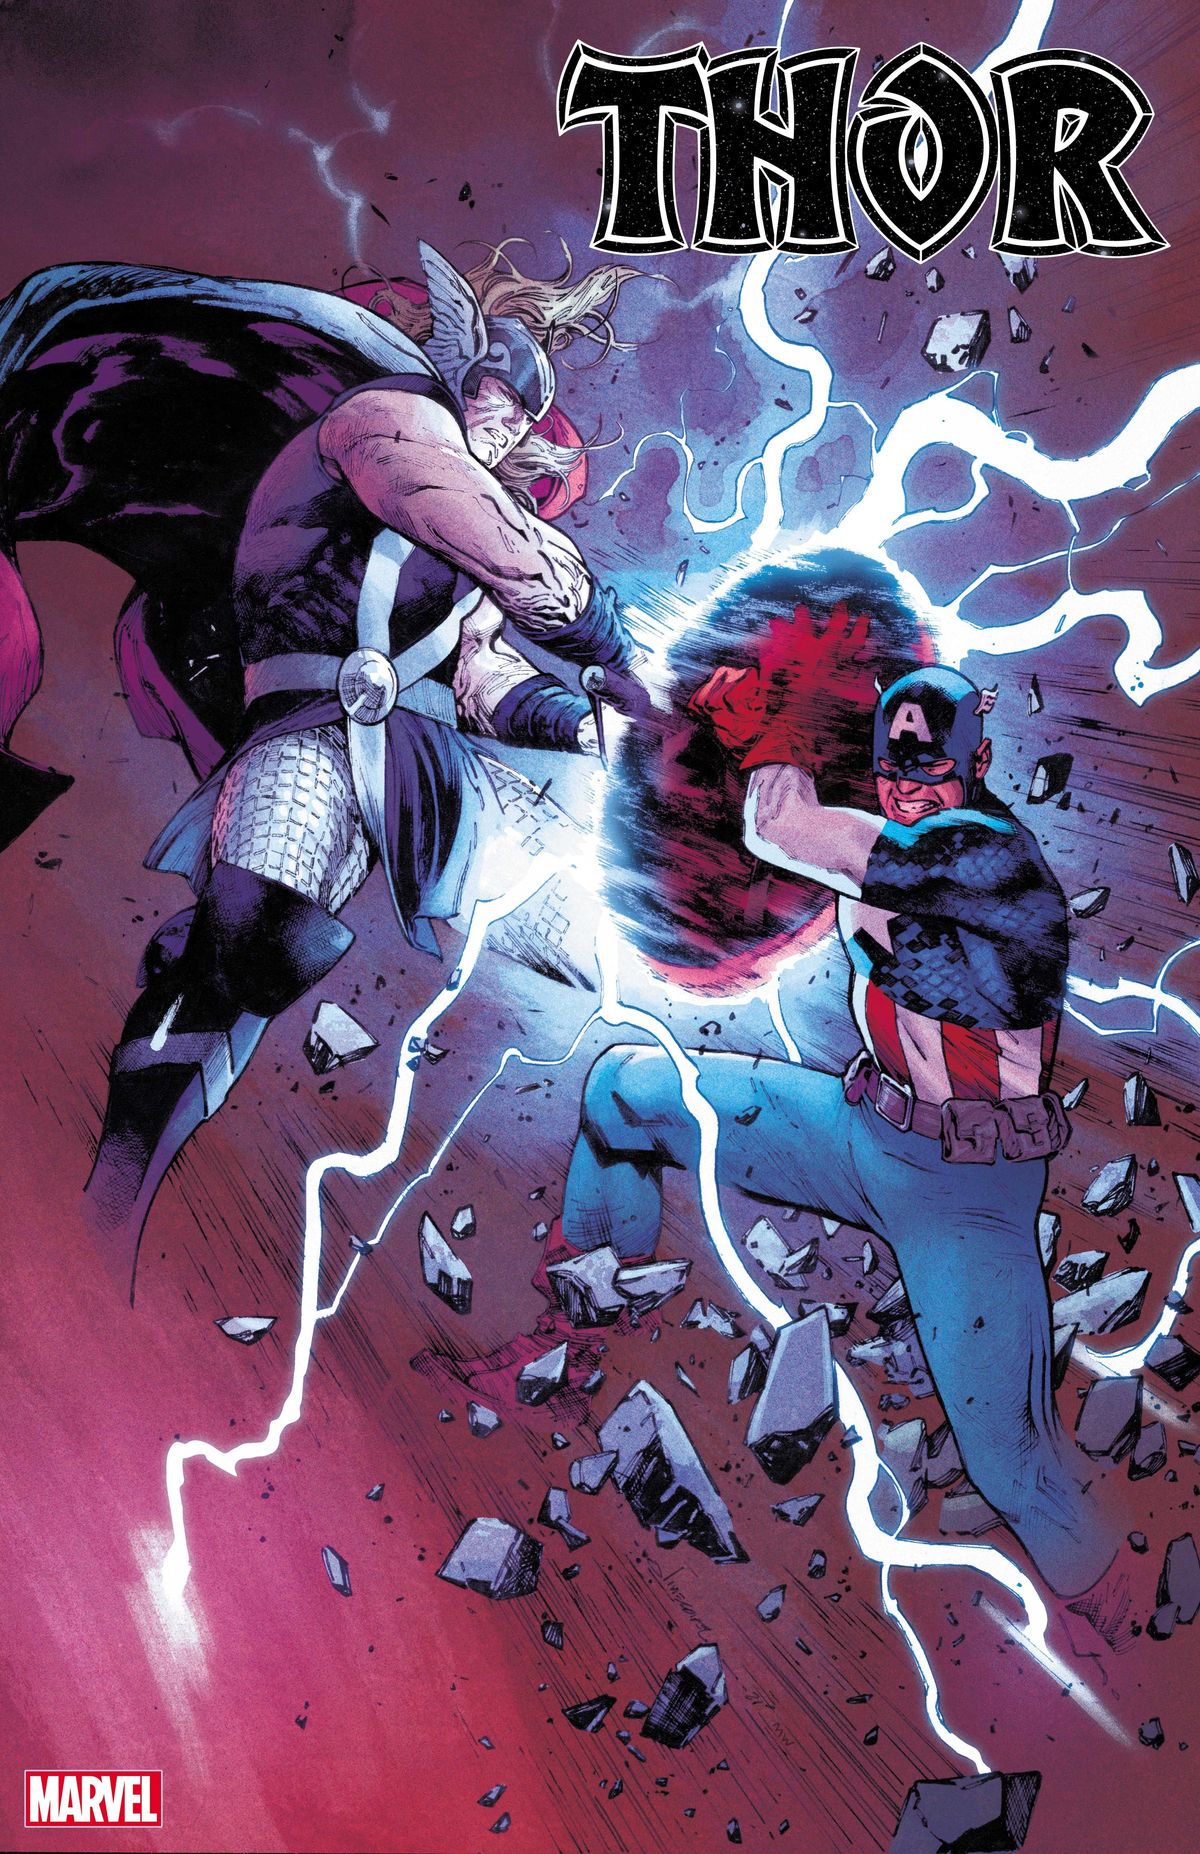 Universul Marvel este pe cale să-l mărturisească pe Thor împotriva Căpitanului America